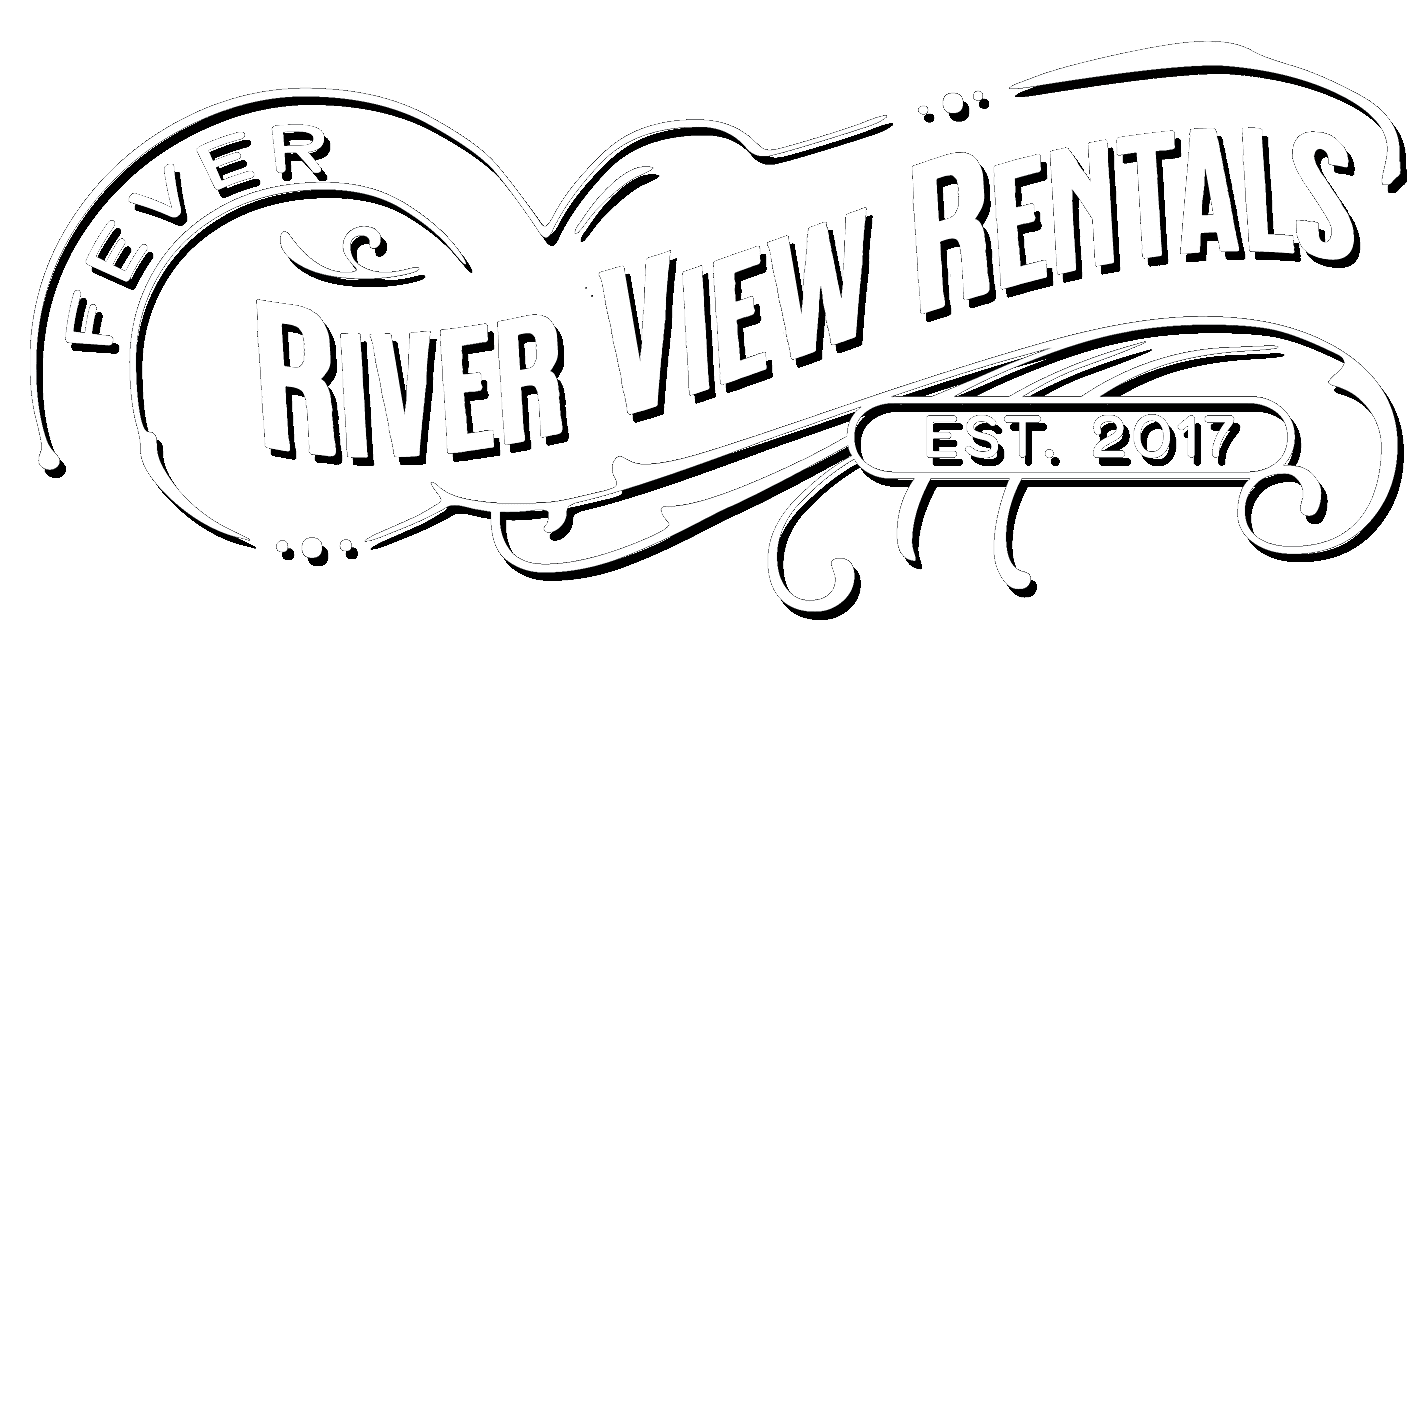 Fever River View Rentals